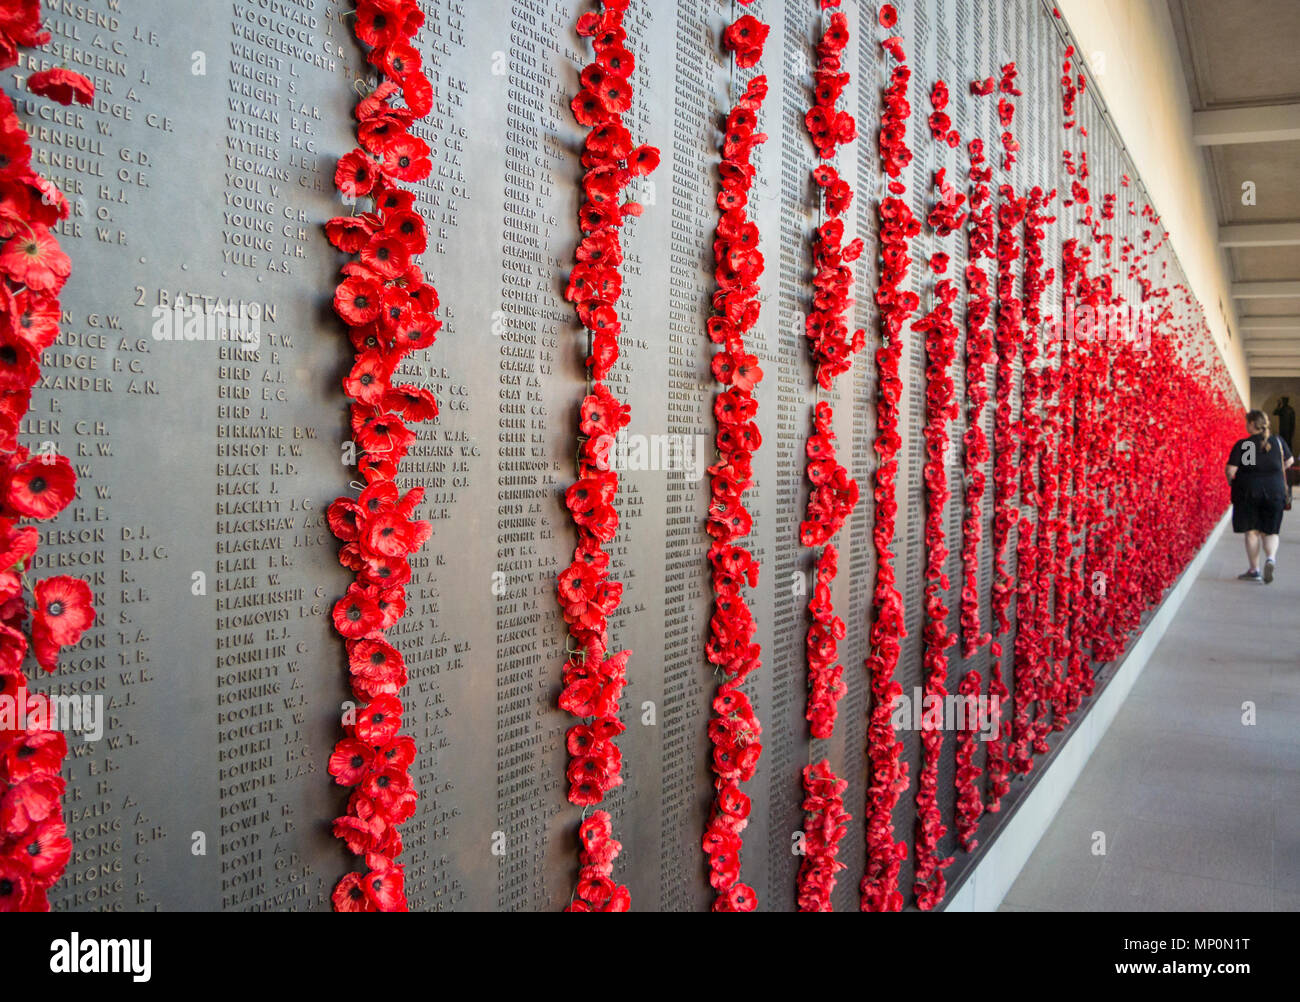 Amapolas rojas dejados por los visitantes de la Australian War Memorial muro del recuerdo Foto de stock